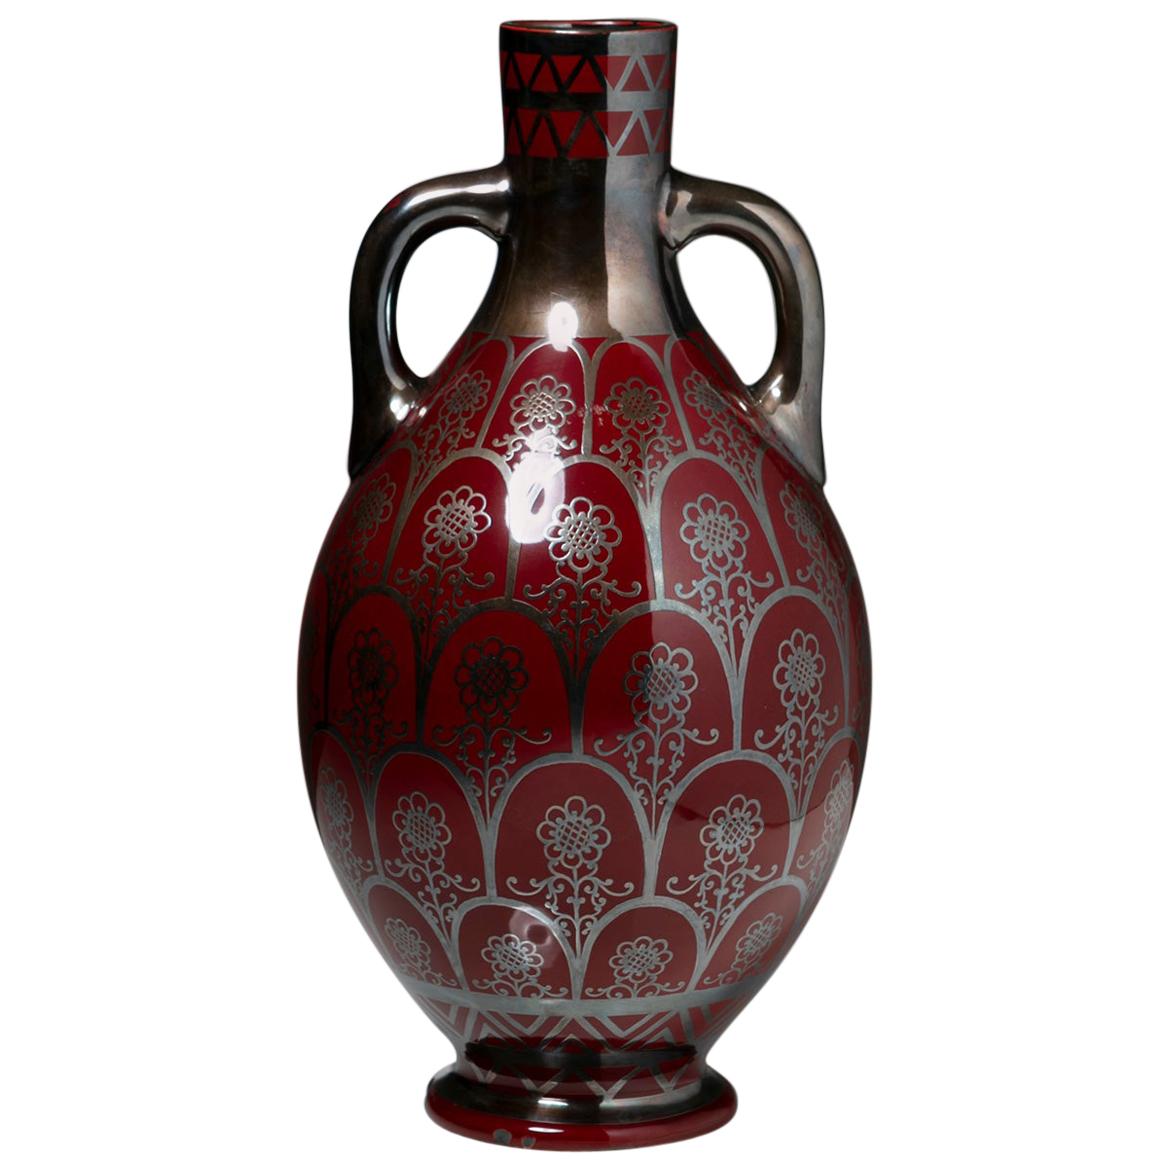 1930s Vase by Richard Ginori